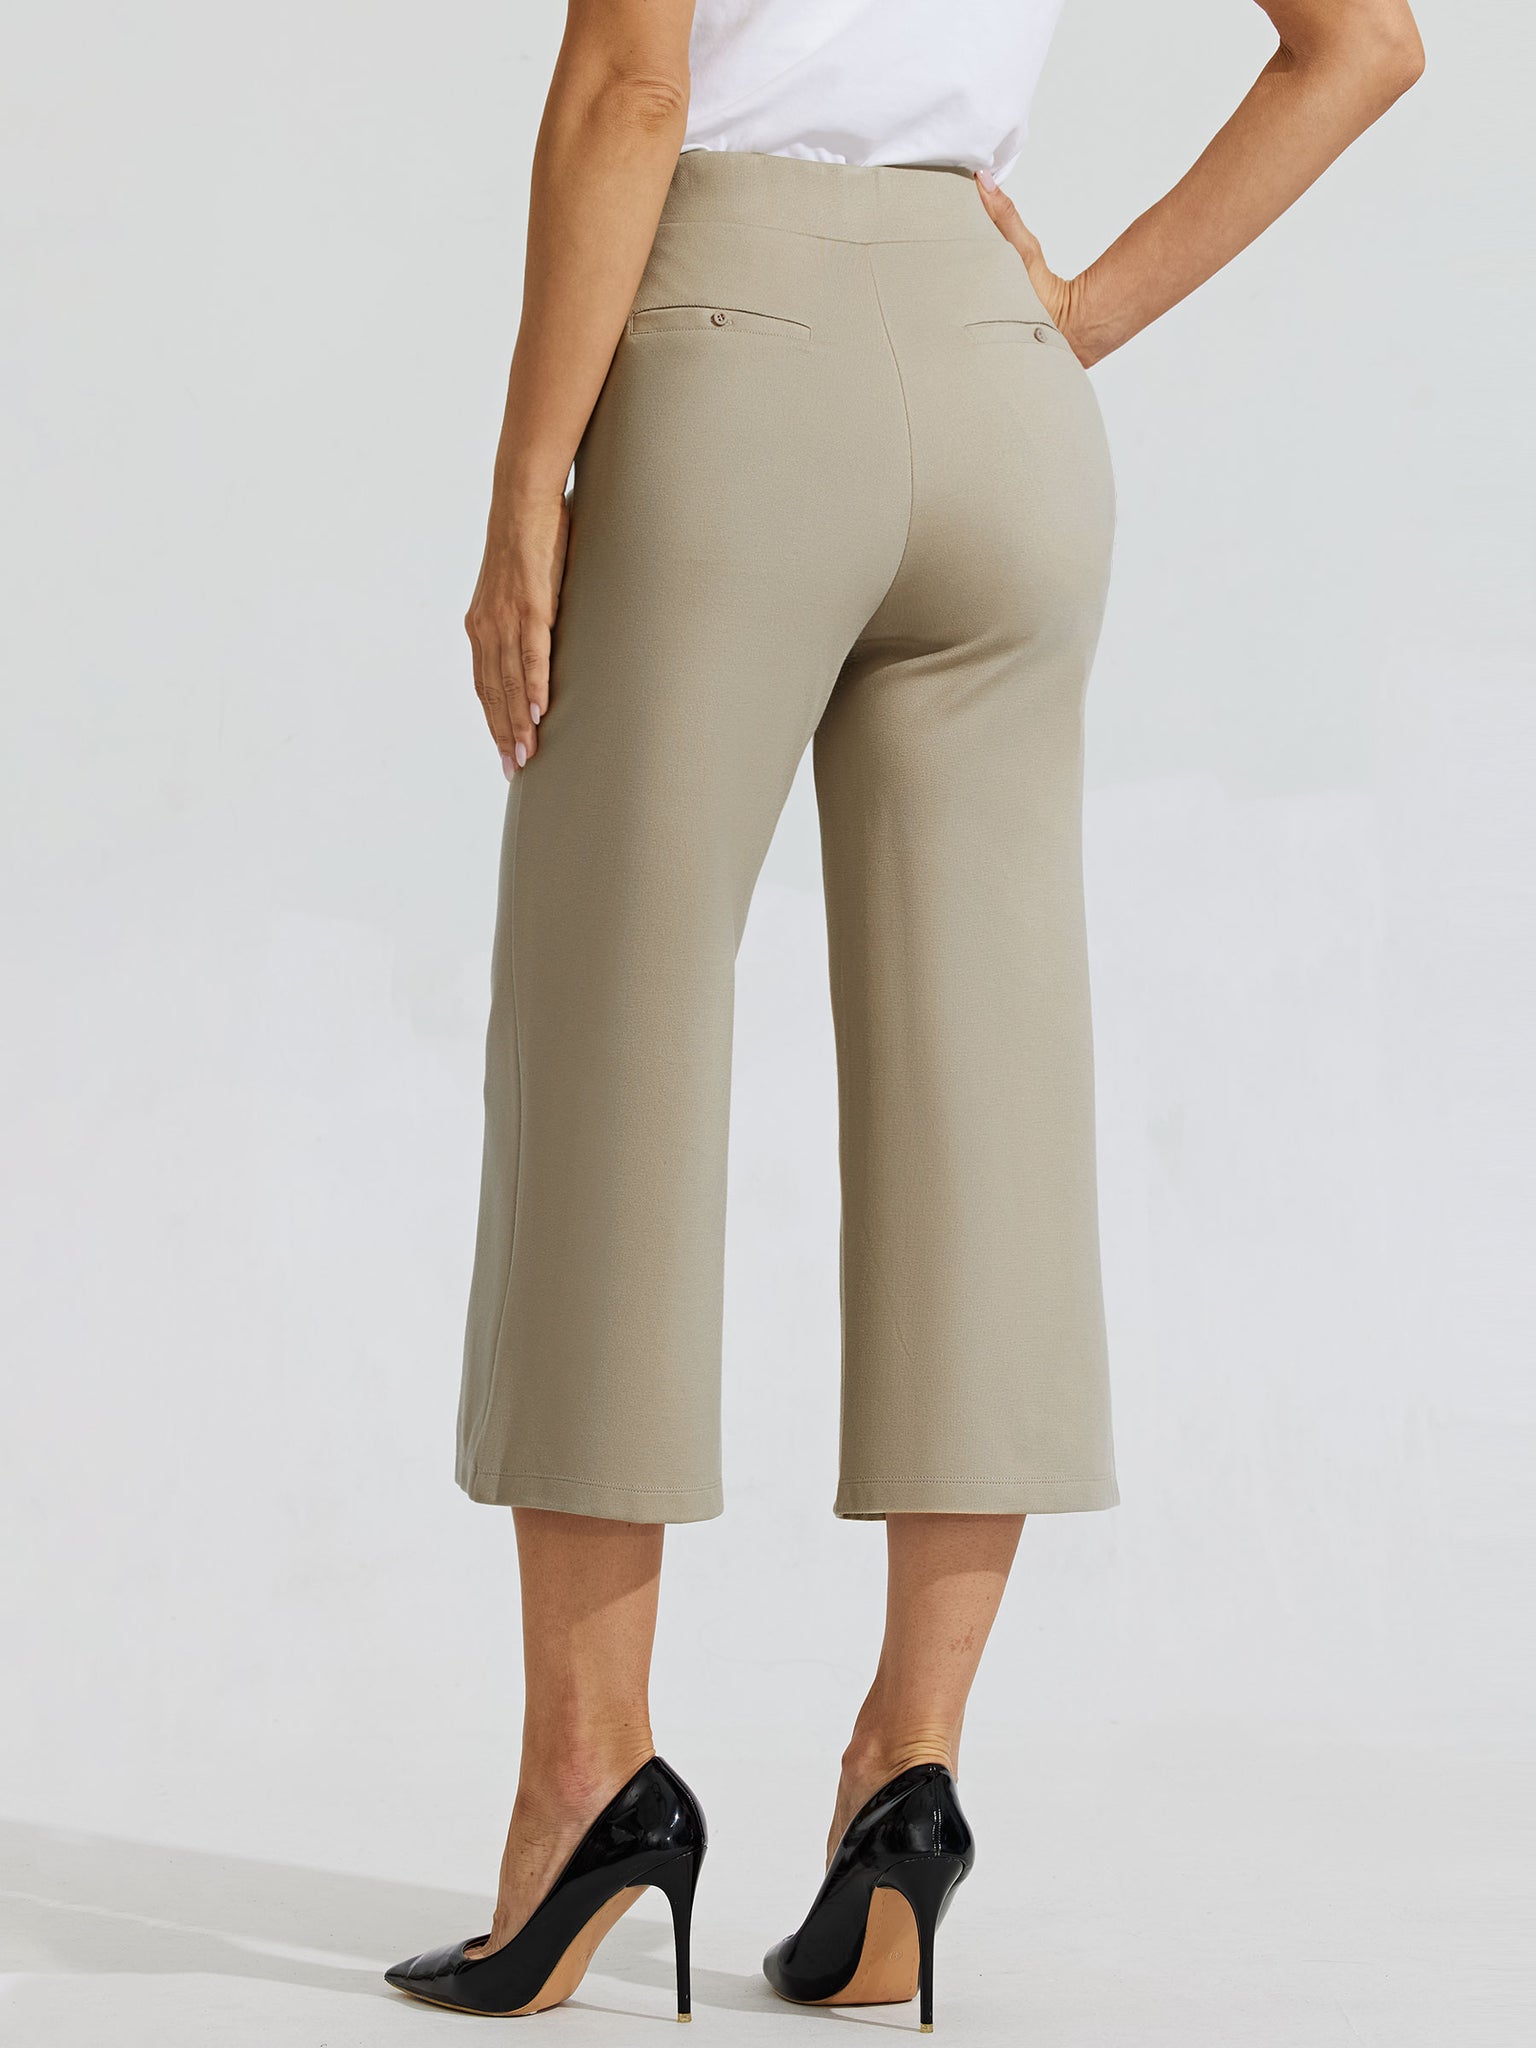 Women's Stretch Capri Wide-Leg Dress Pants_Khaki_model3